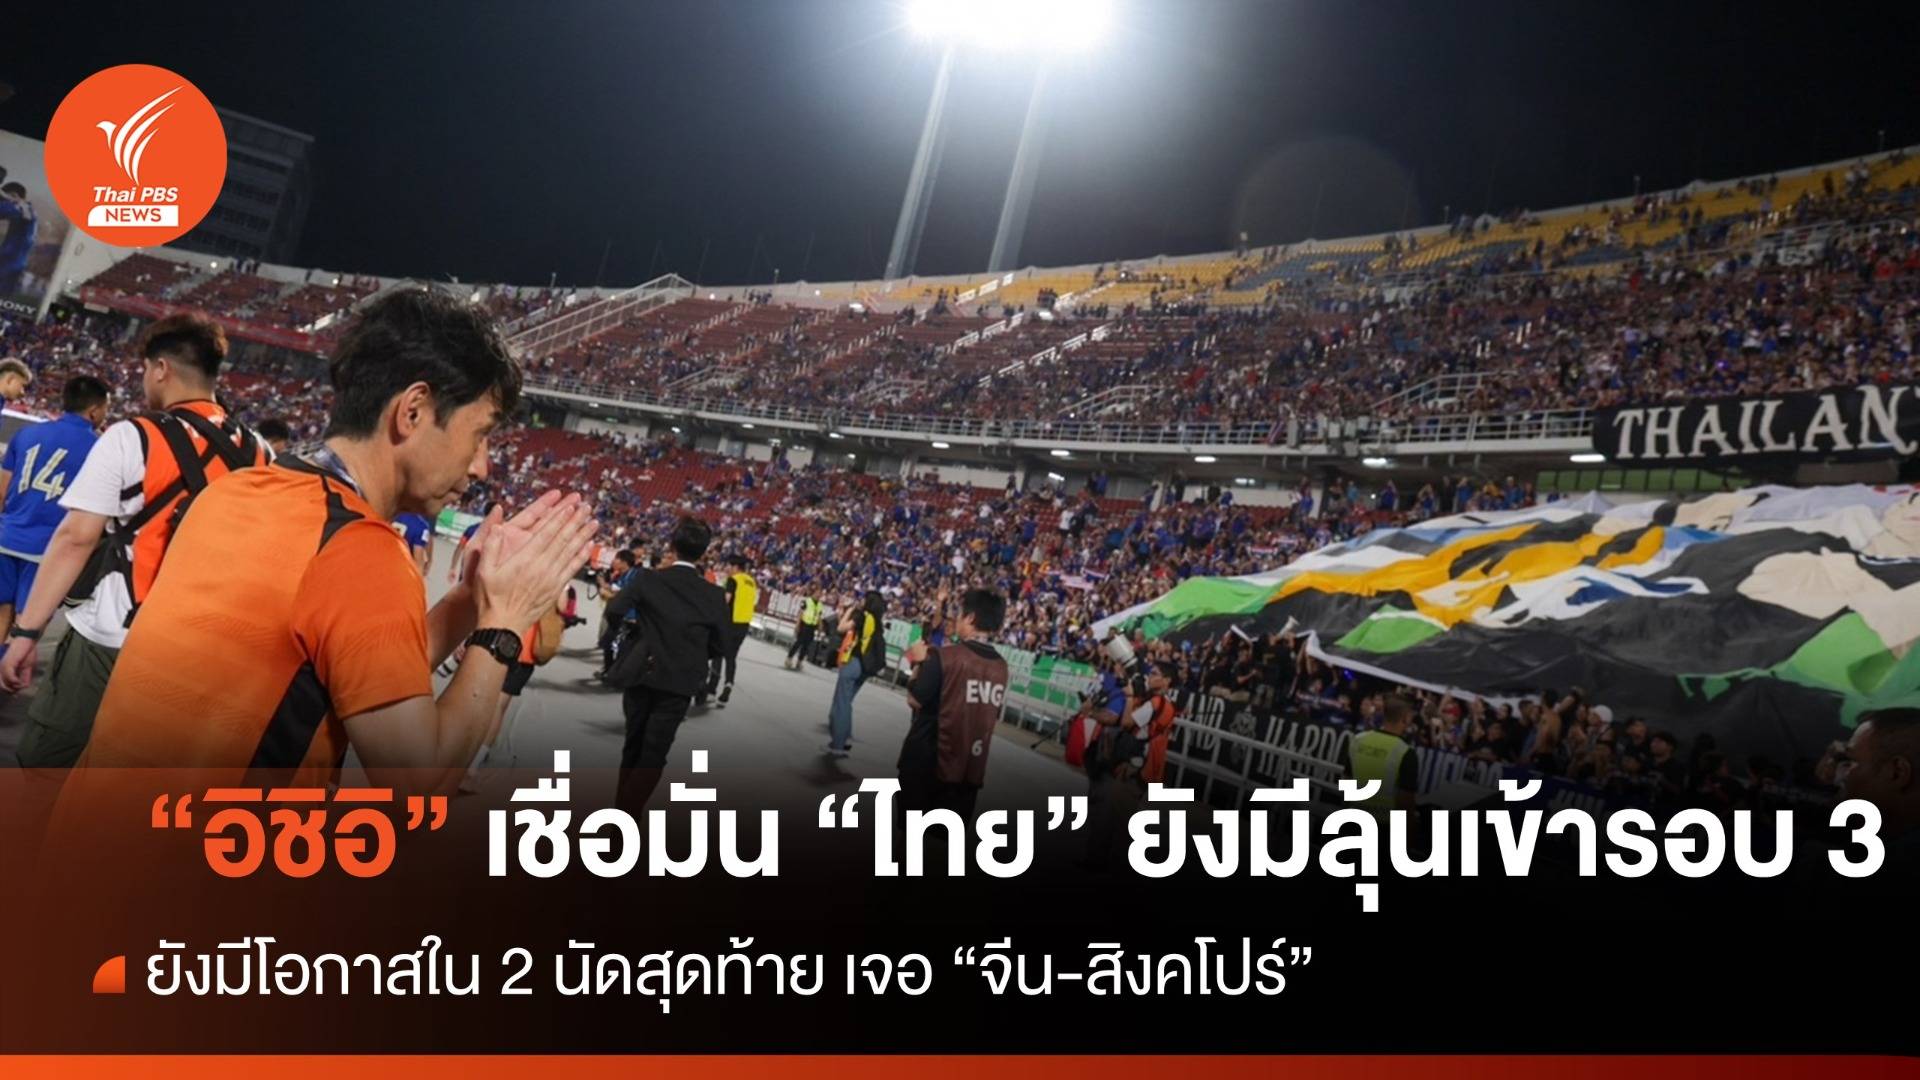 "อิชิอิ" เชื่อมั่น ทีมชาติไทย ยังมีโอกาสเข้ารอบ 3 คัดบอลโลก